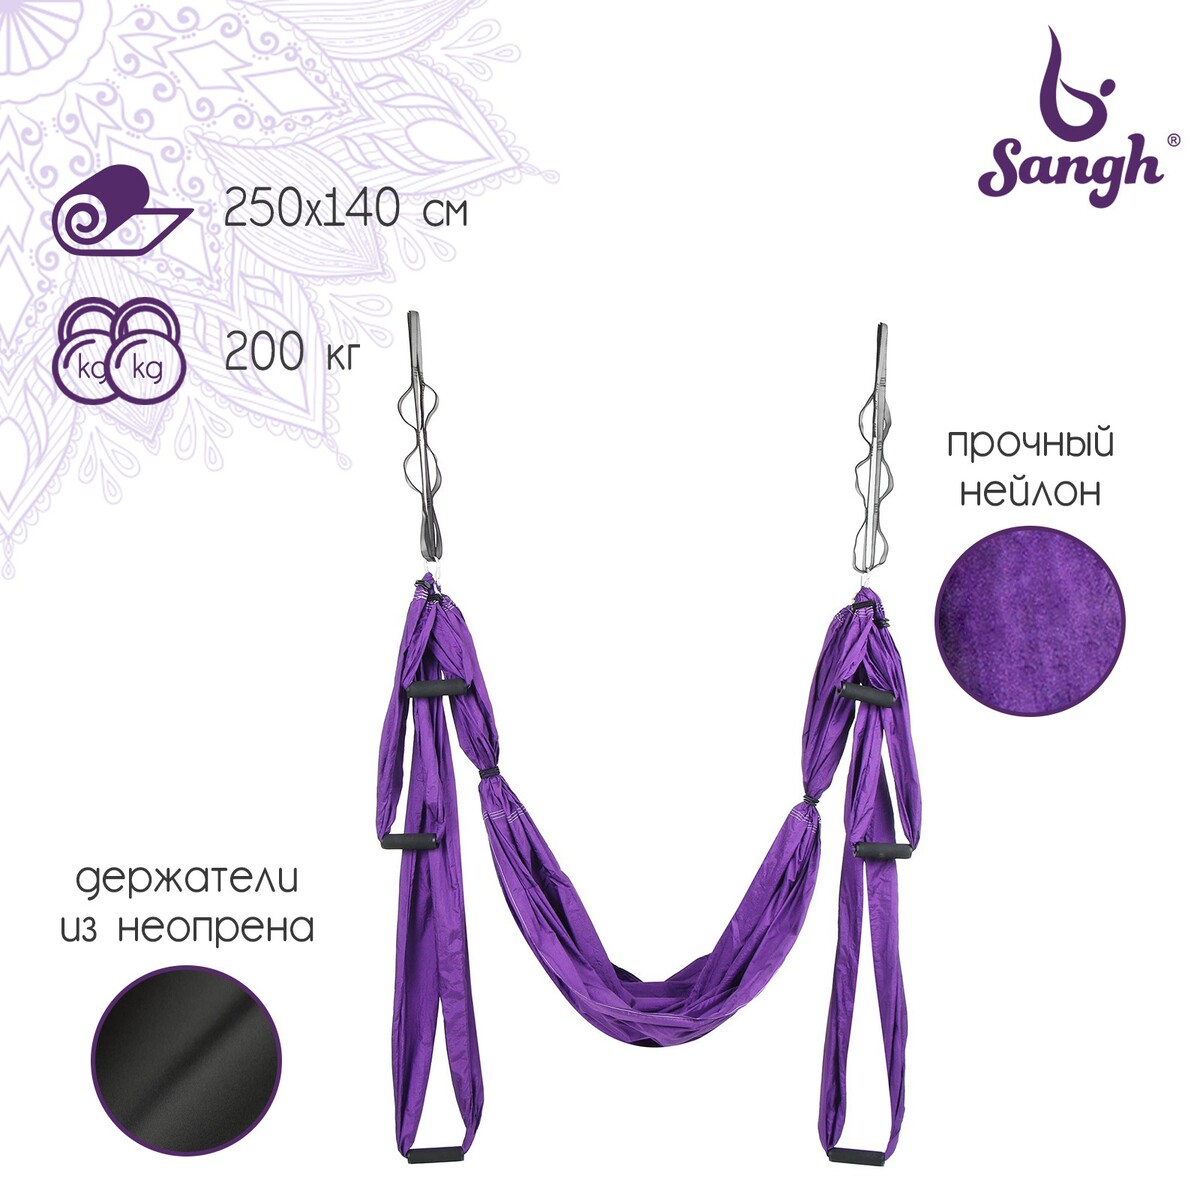 Гамак для йоги sangh, 250×140 см, цвет фиолетовый гамак для йоги sangh 250×140 см розовый